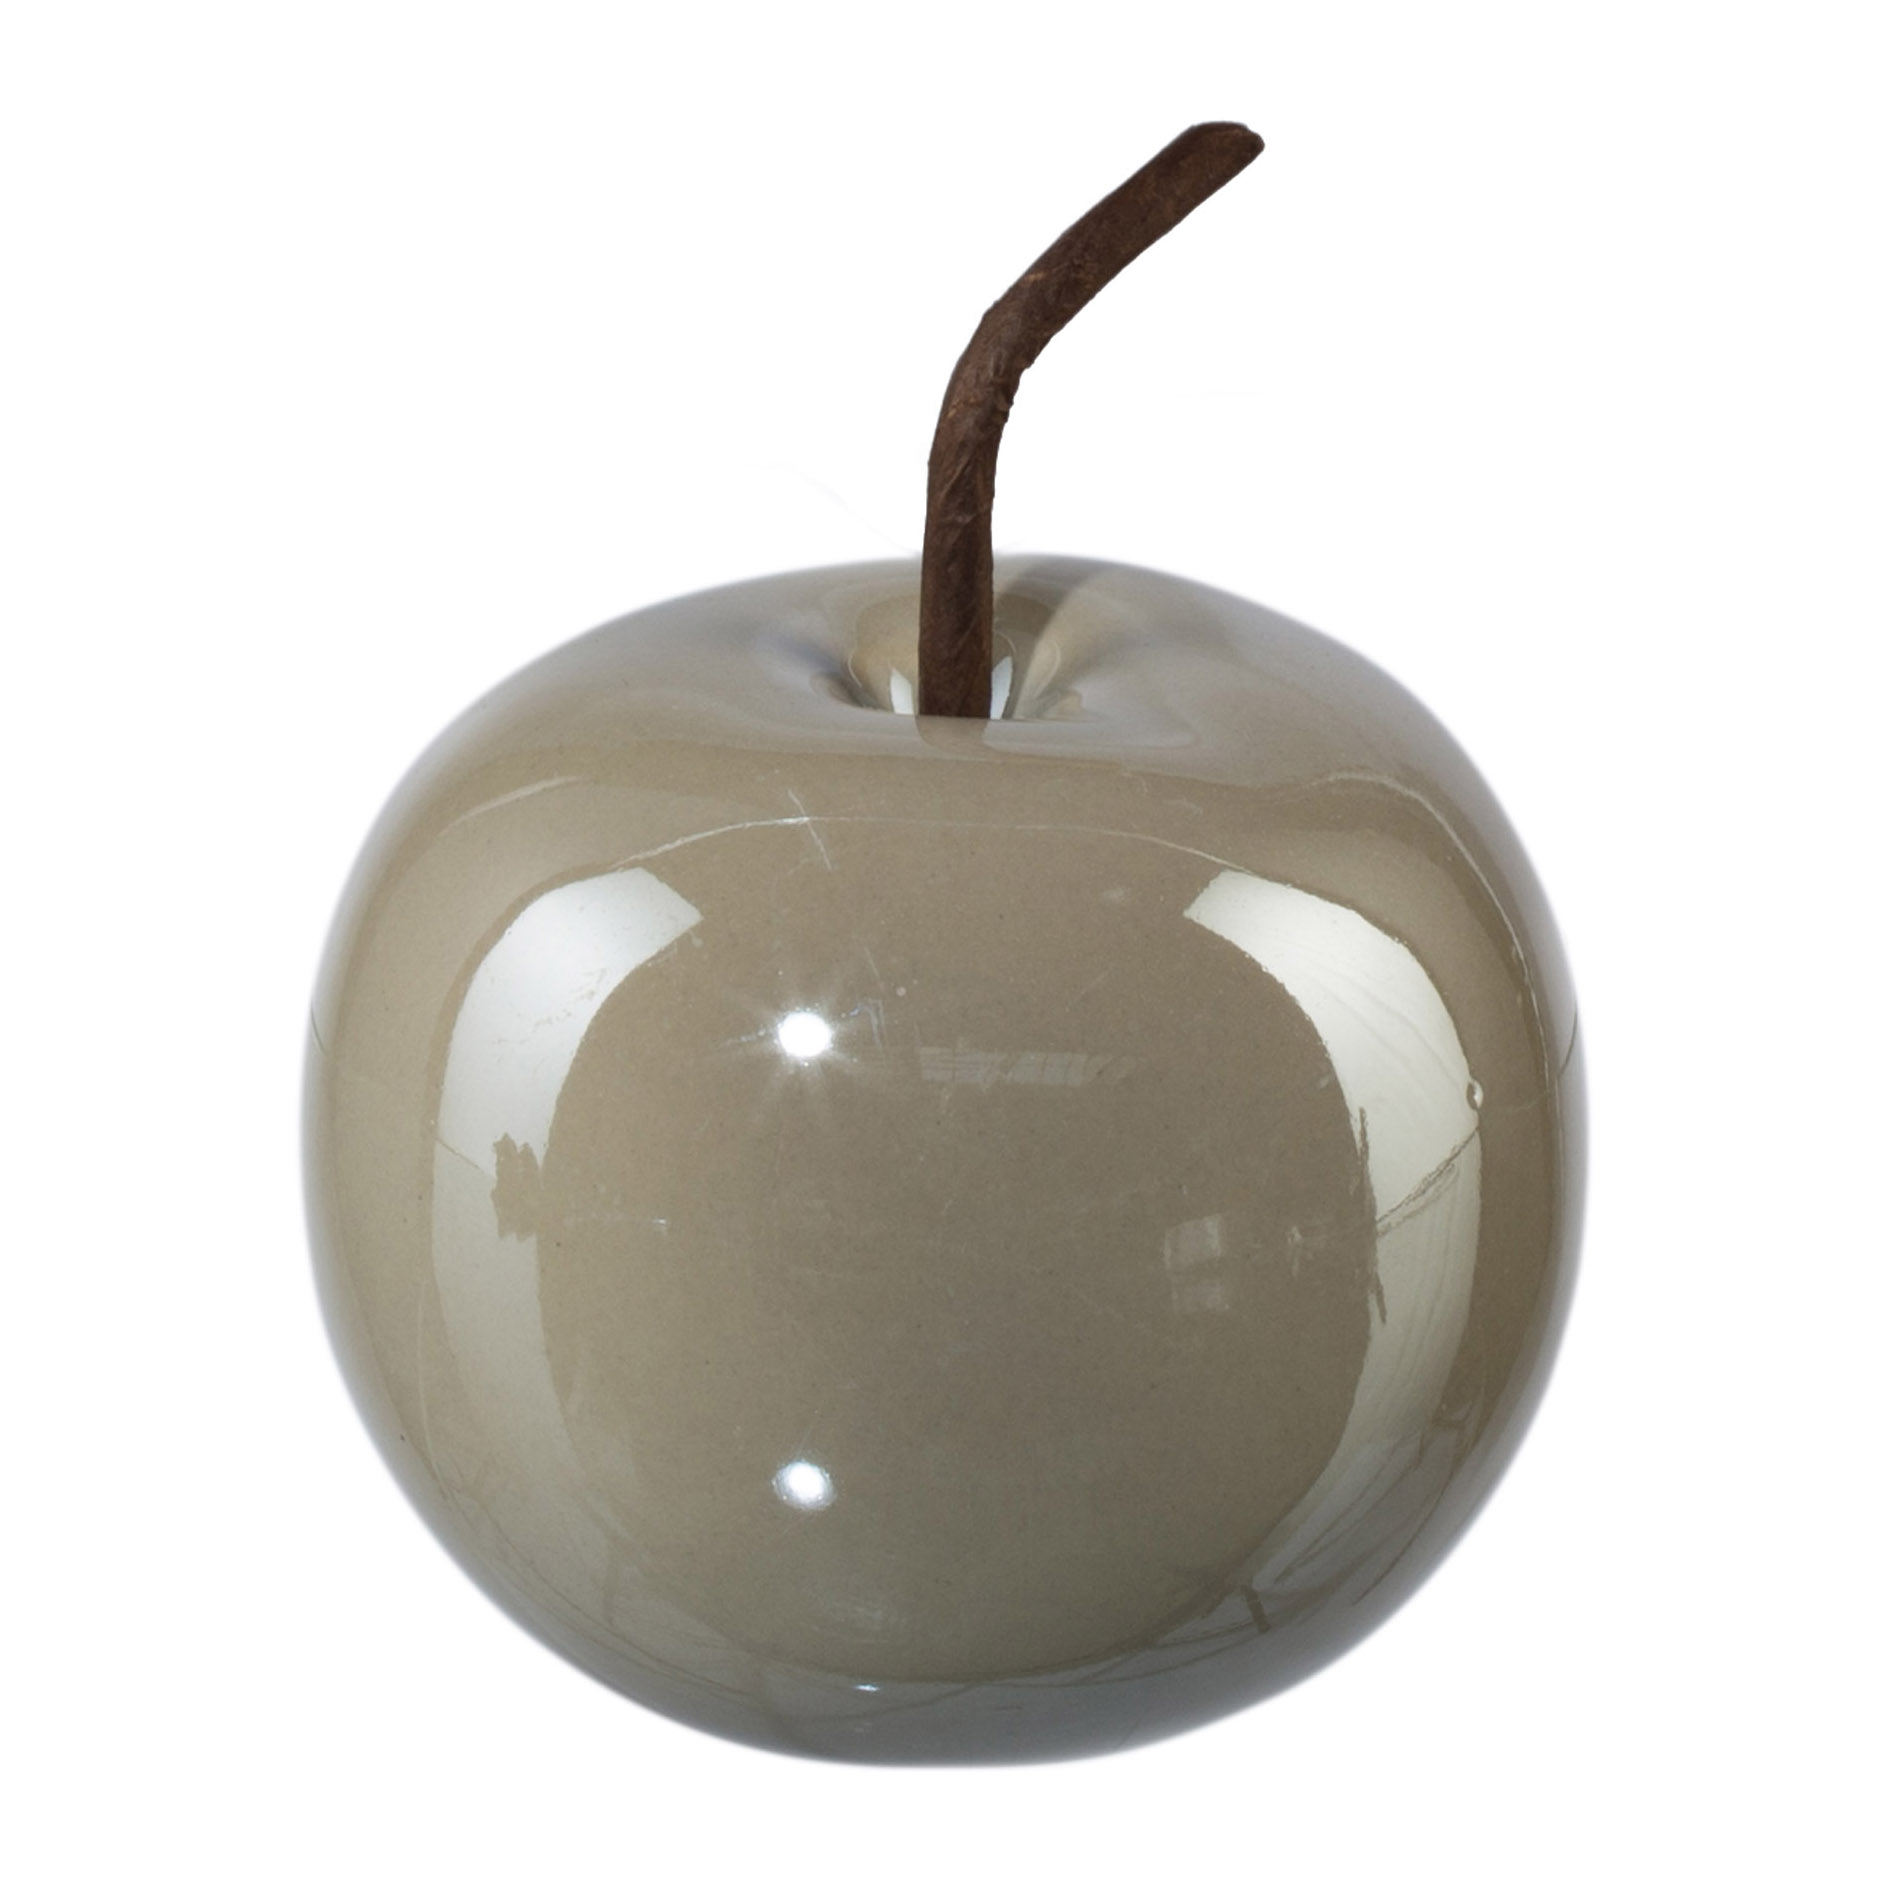 Keramik Apfel PEARL